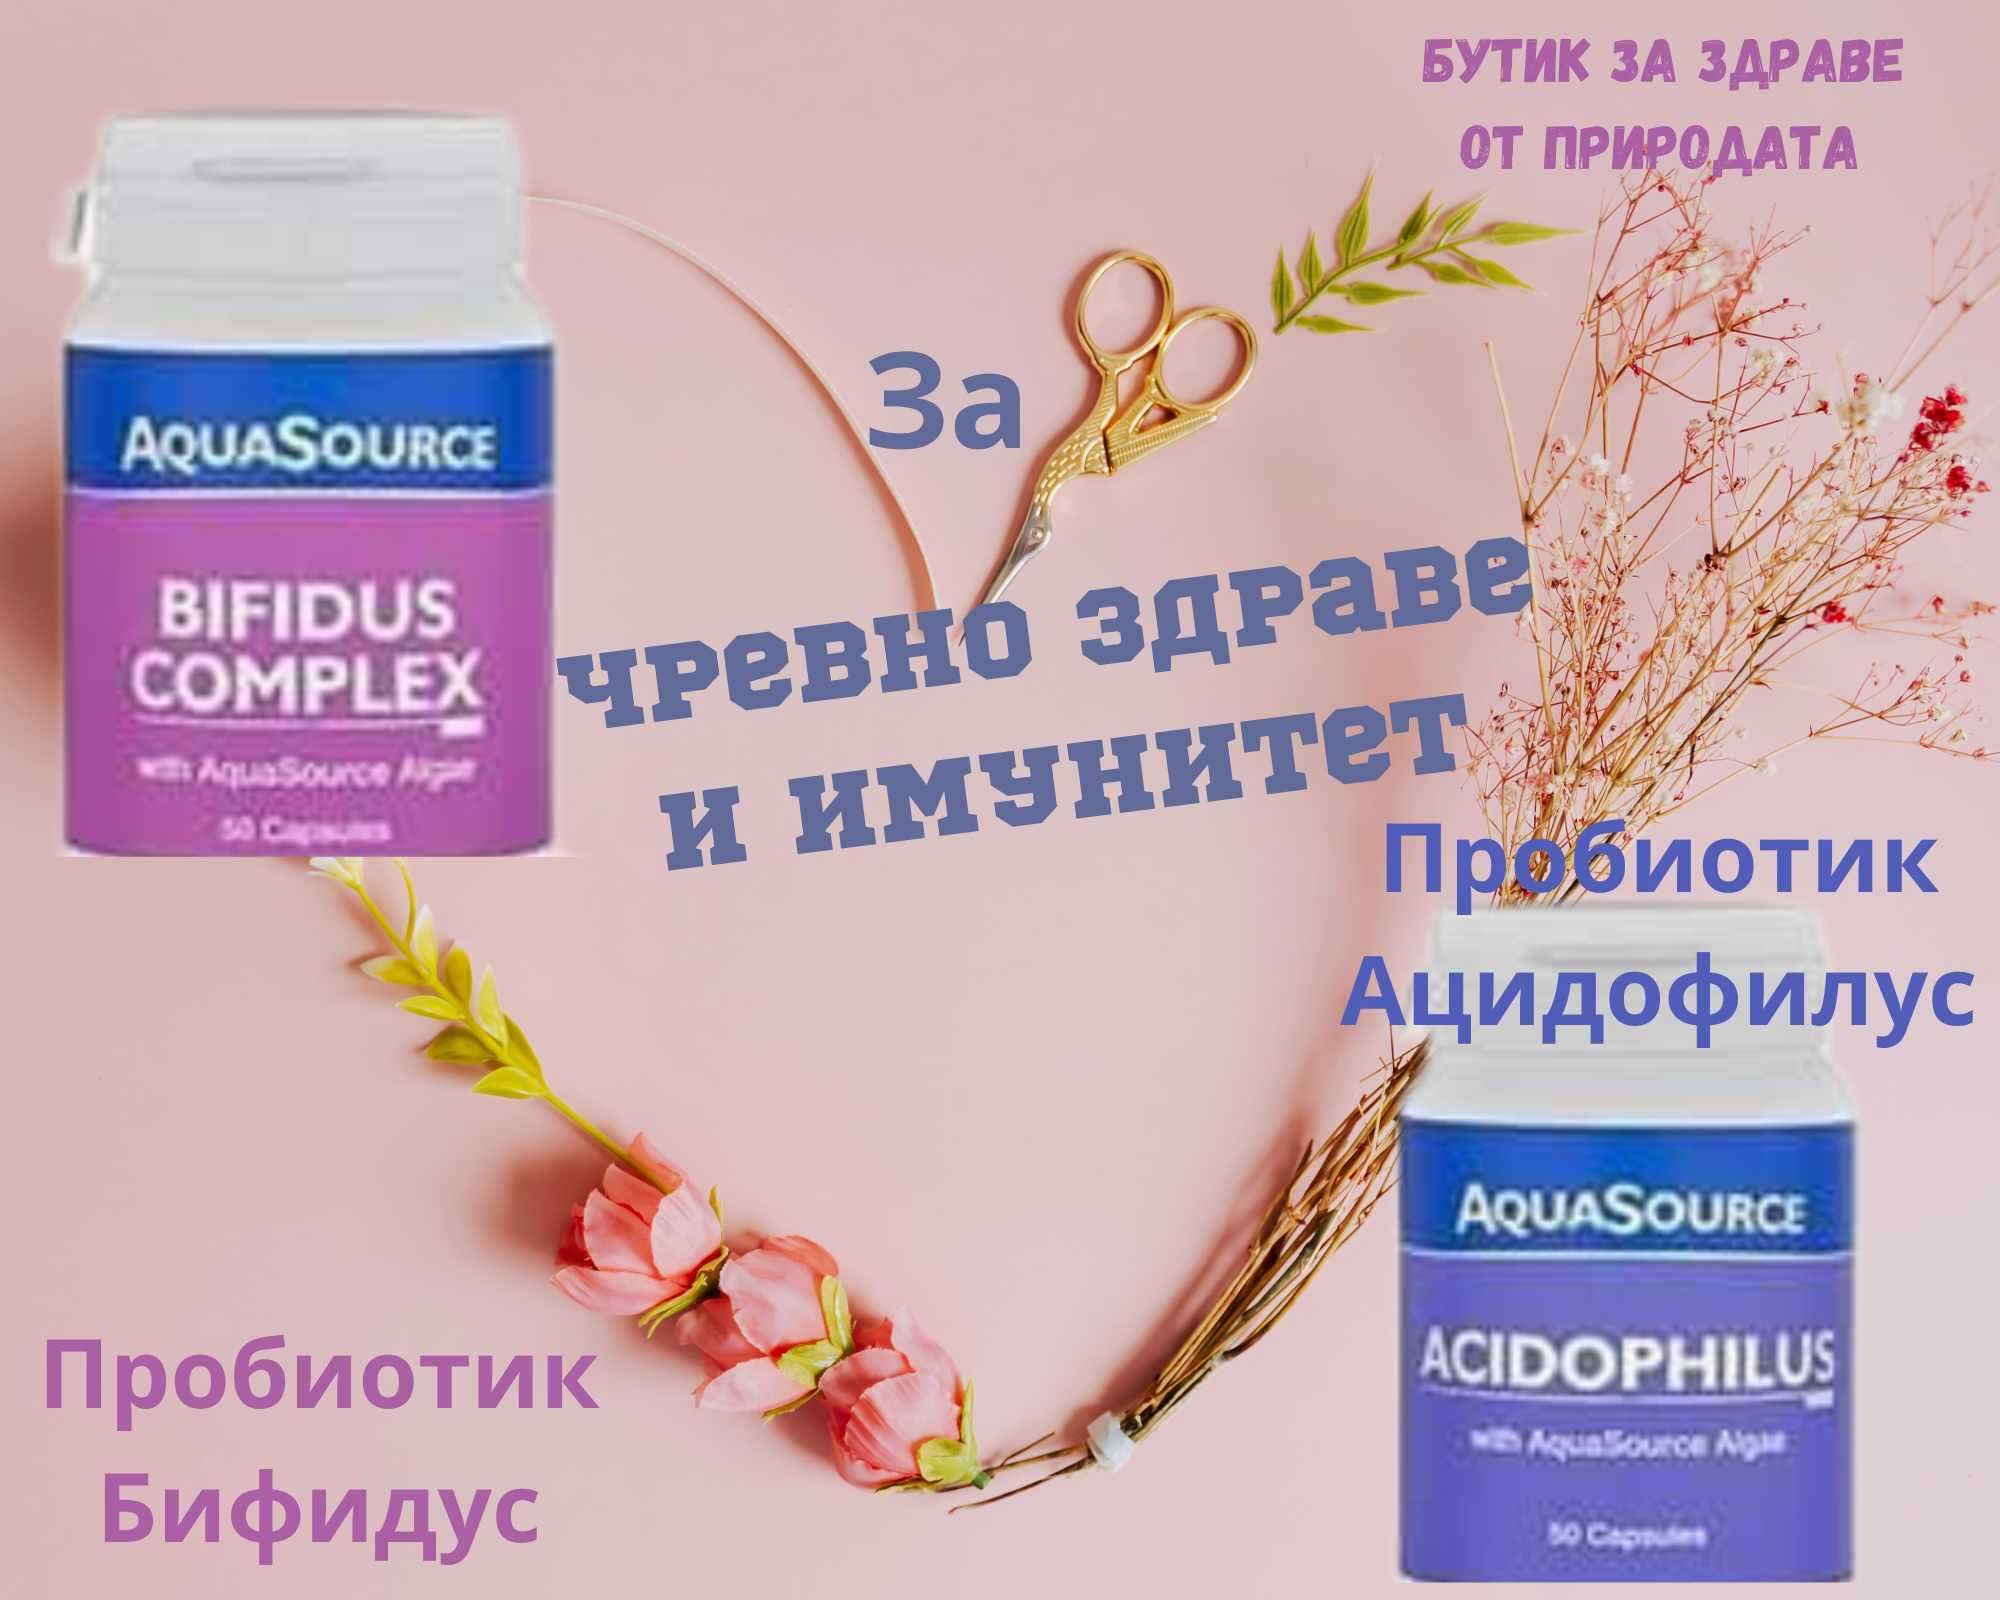 АкваСорс - продукти за здраве и красота